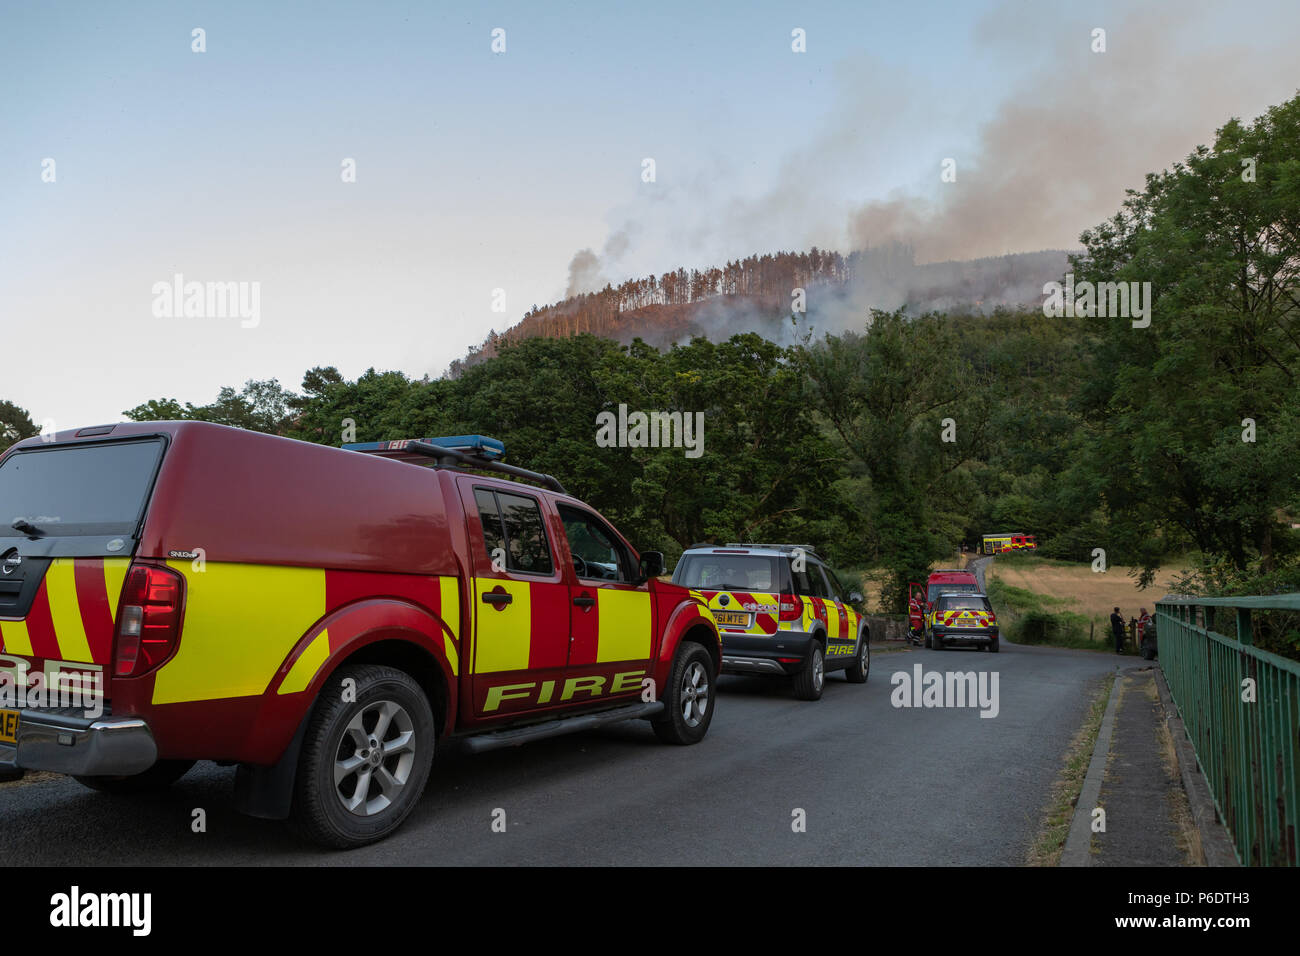 Les véhicules et le personnel des services d'incendie au MCG, de Rheidol pendant l'incendie de la vallée de Rheidol juin 2018. Crédit : Ian Jones/Alamy Live News. Crédit : Ian Jones/Alamy Live News Banque D'Images